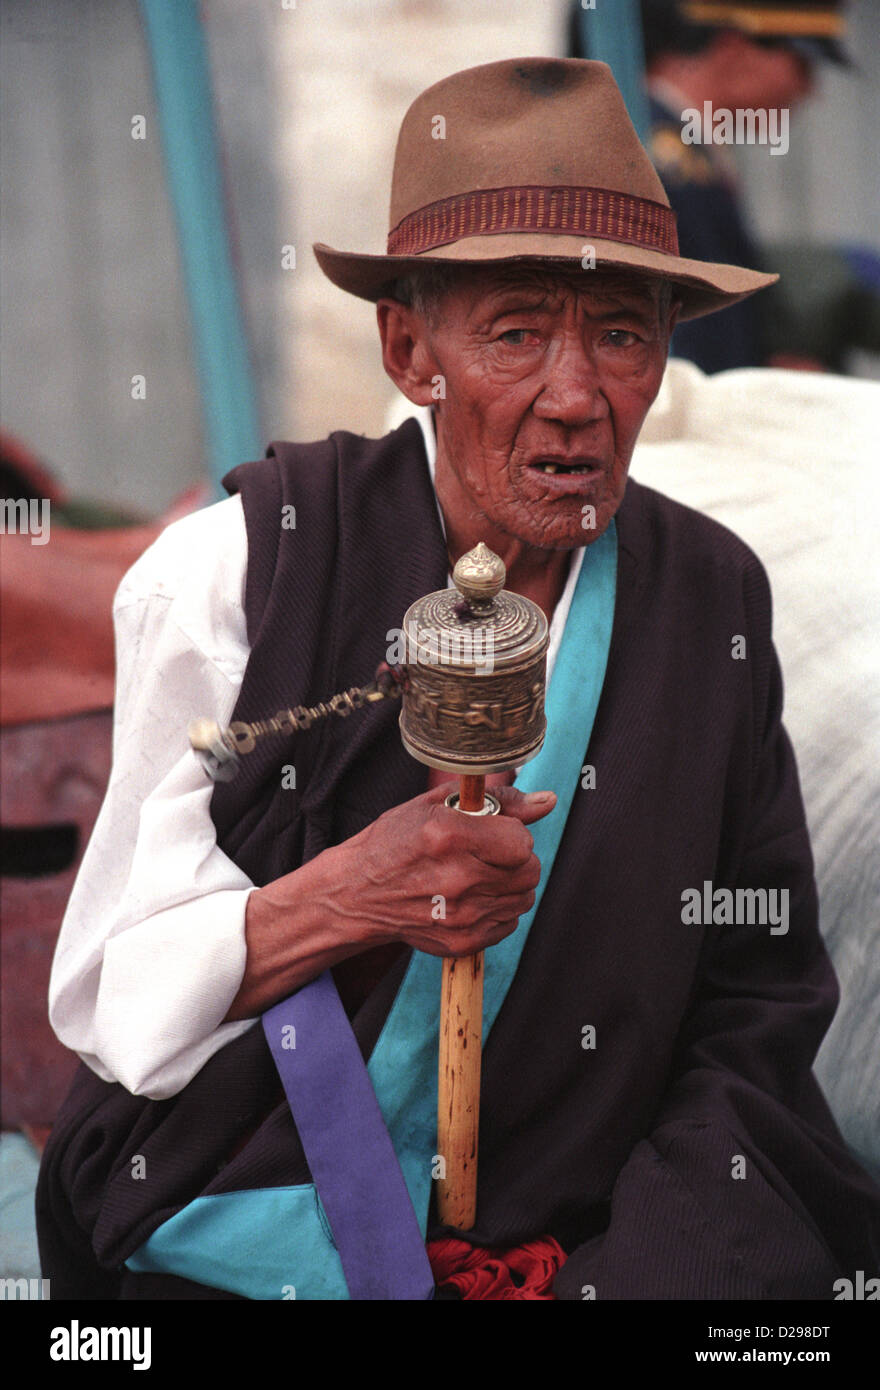 Le Tibet. L'homme religieux. La roue tourne Banque D'Images